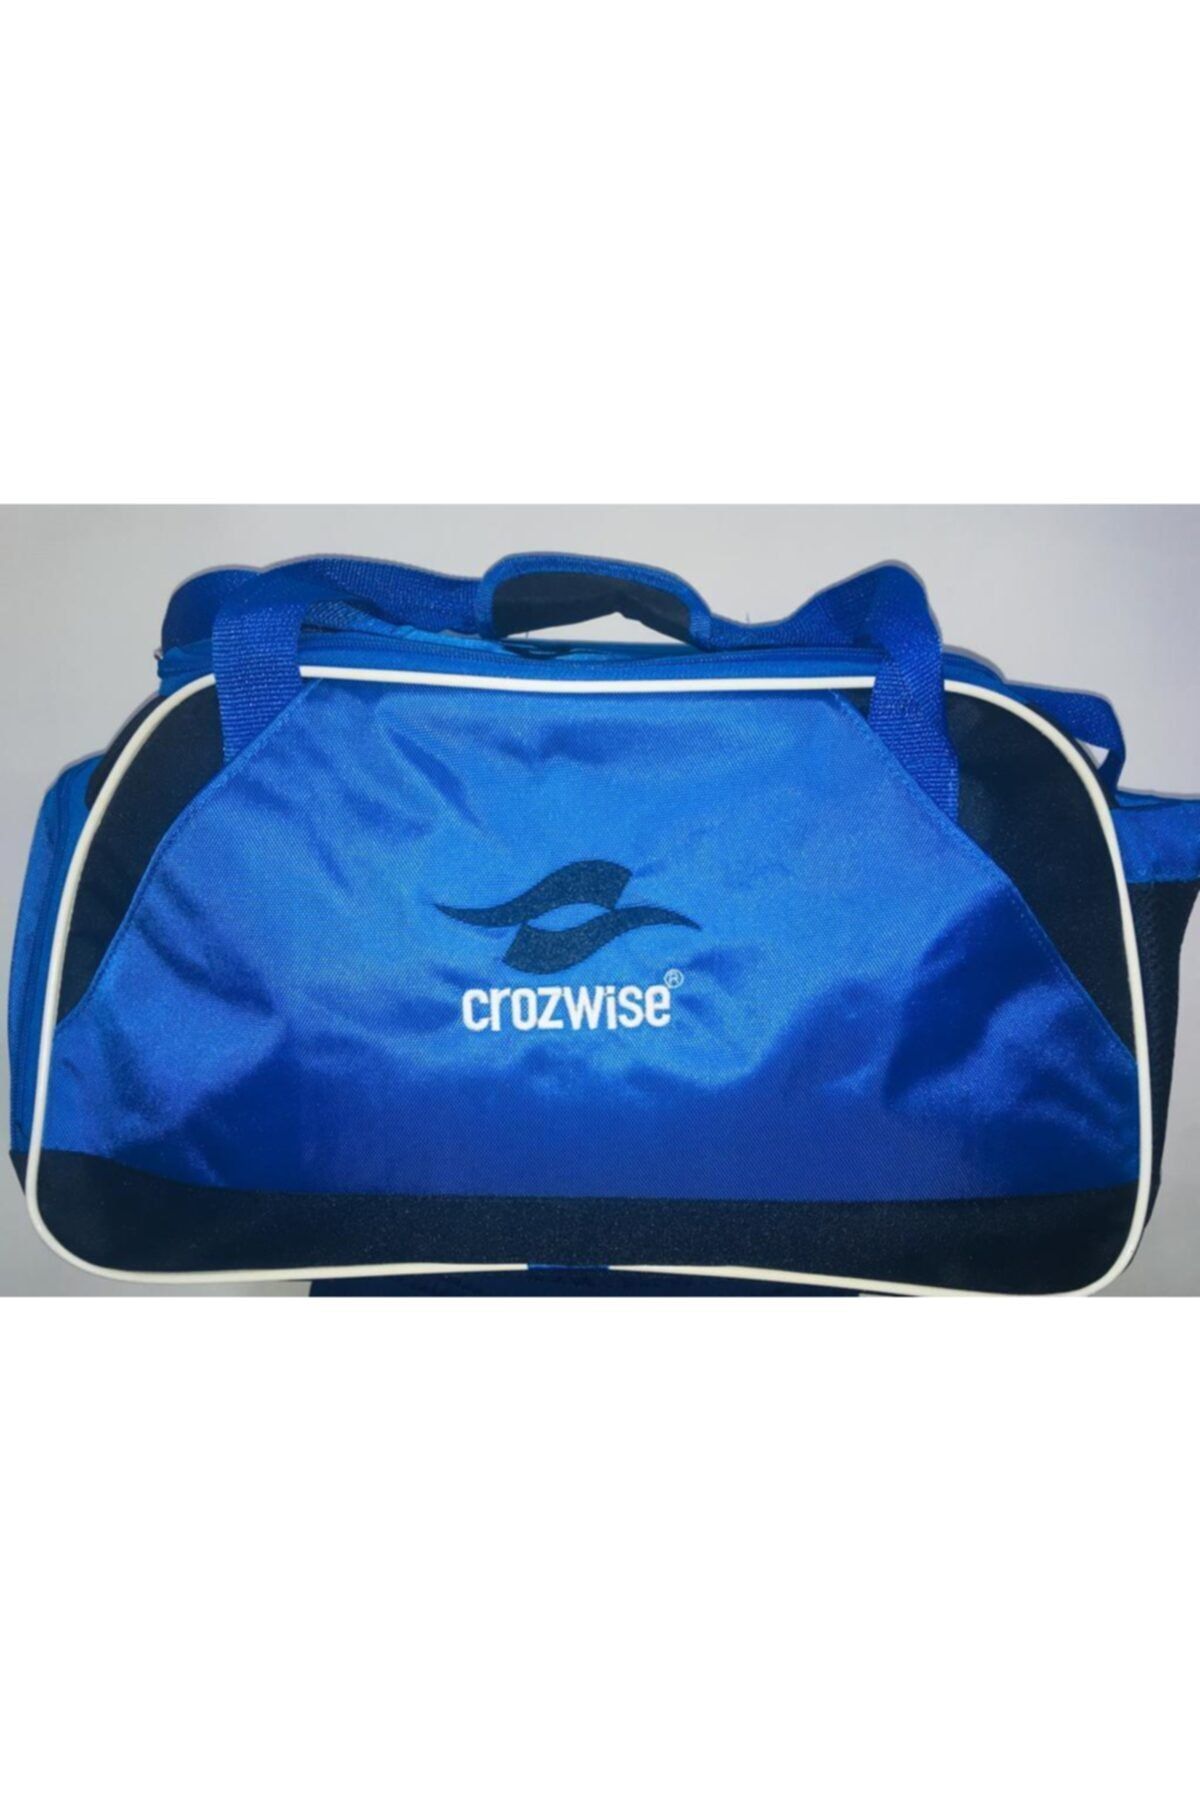 Crozwise Crozwıse Crw-01 Spor Çantası